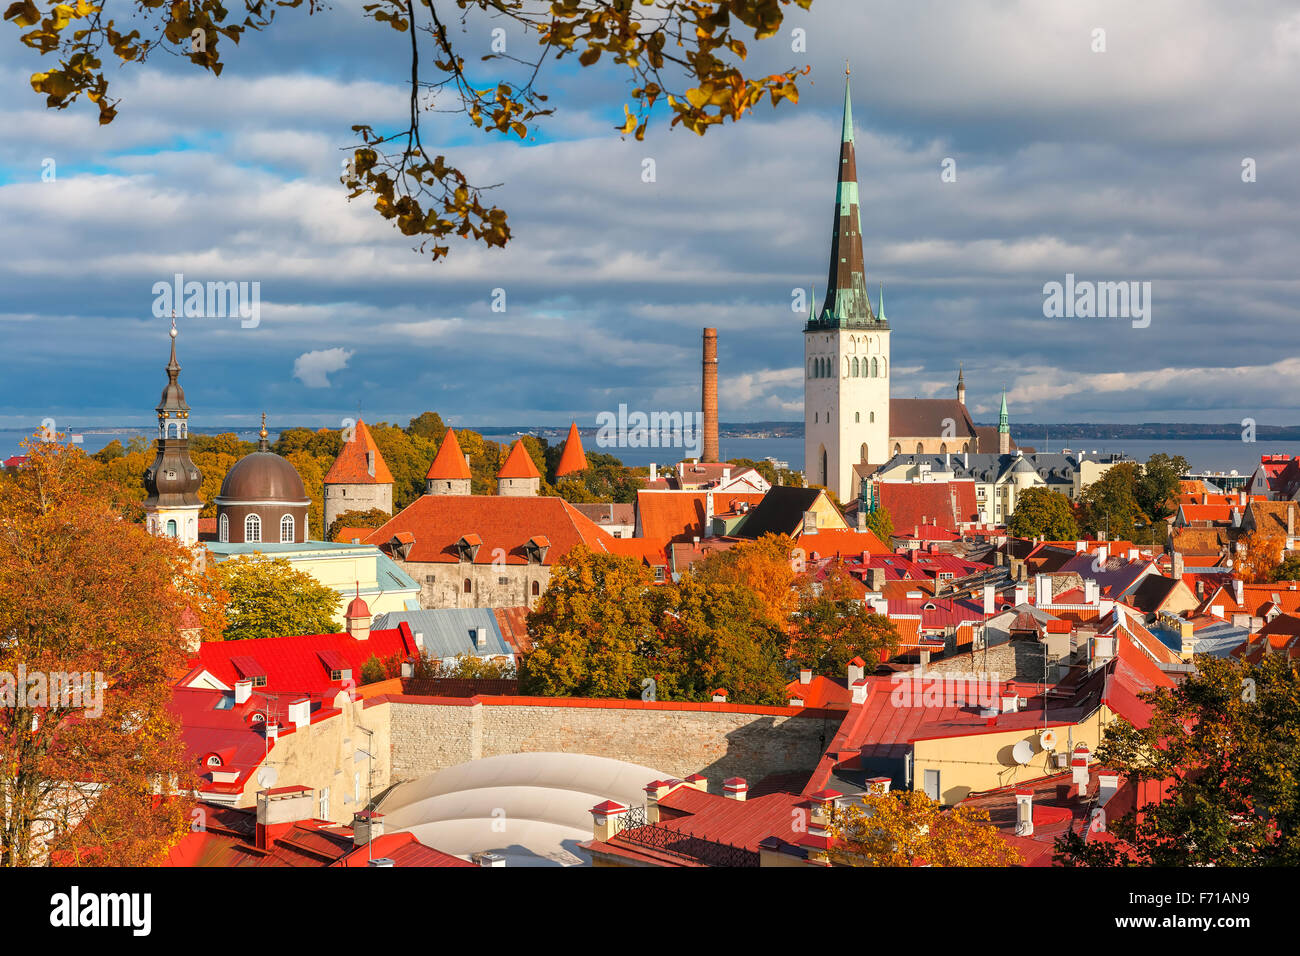 Aerial view old town, Tallinn, Estonia Stock Photo